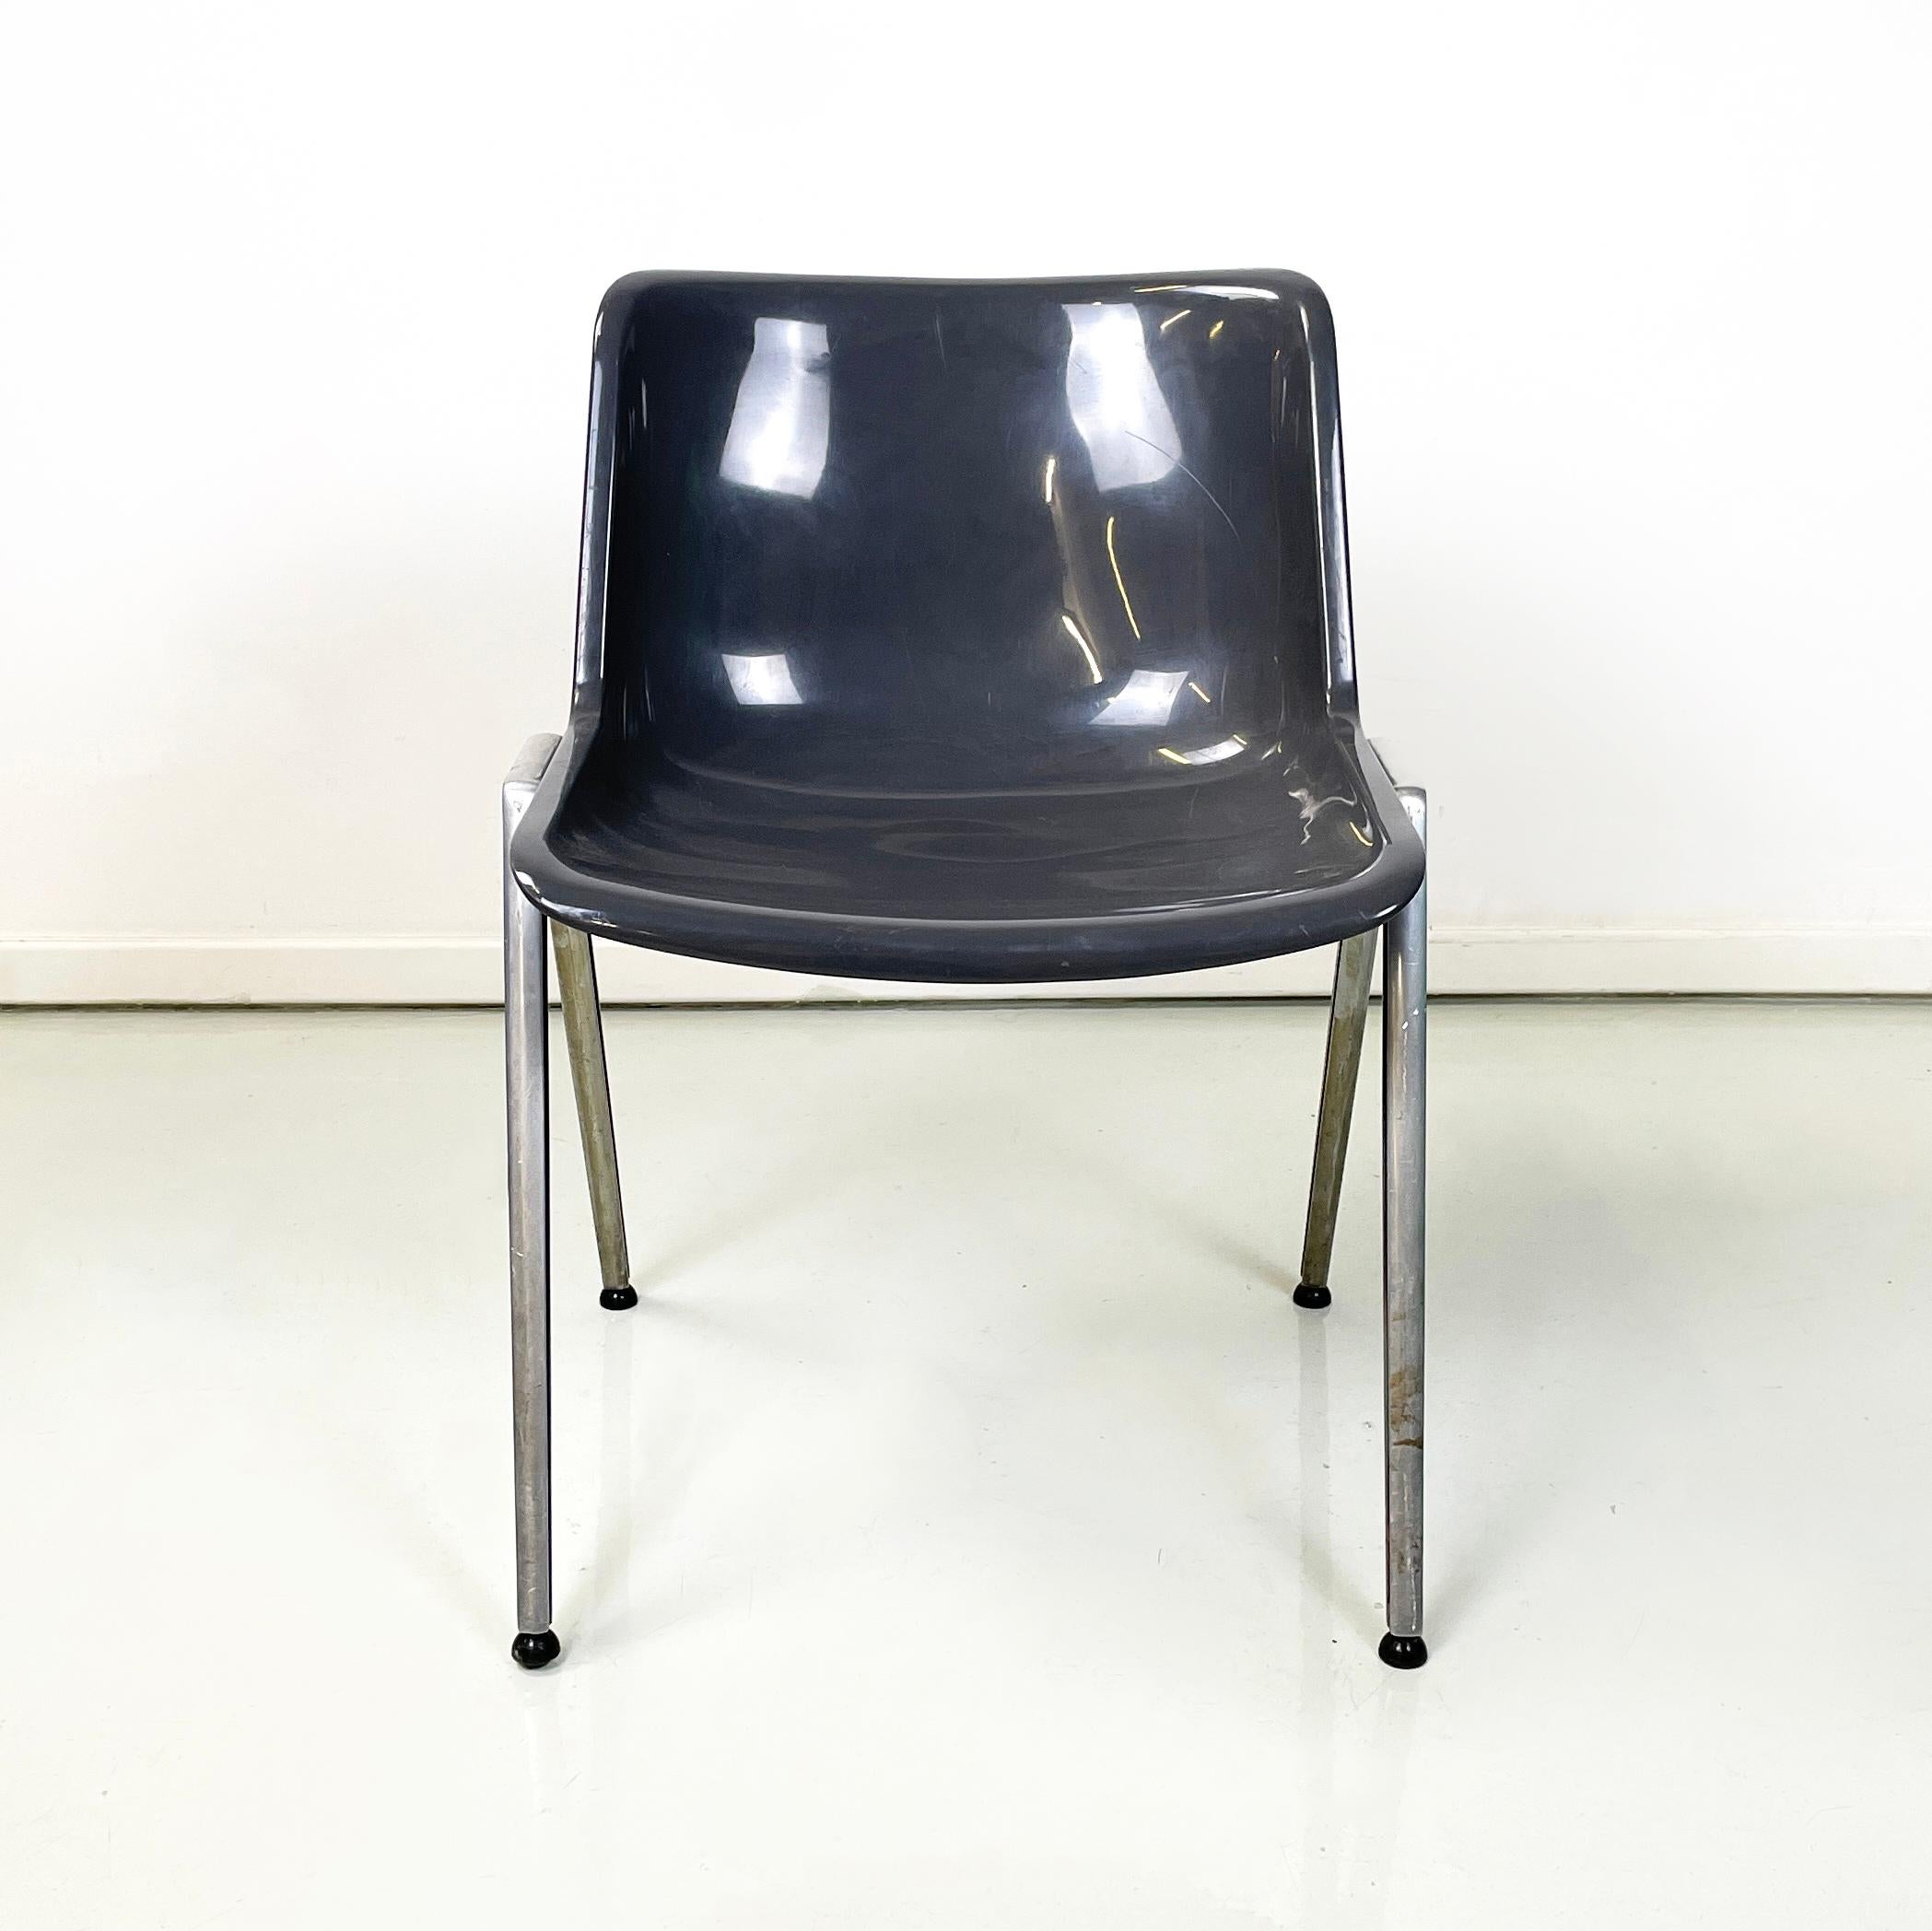 Chaise moderne italienne en aluminium plastique gris Modus SM 203 par Osvaldo Borsani pour Tecno, années 1980
Chaise mod. Modus SM 203 avec assise et dossier composés d'une monocoque en plastique gris incurvé. Les pieds en aluminium sont carrés.